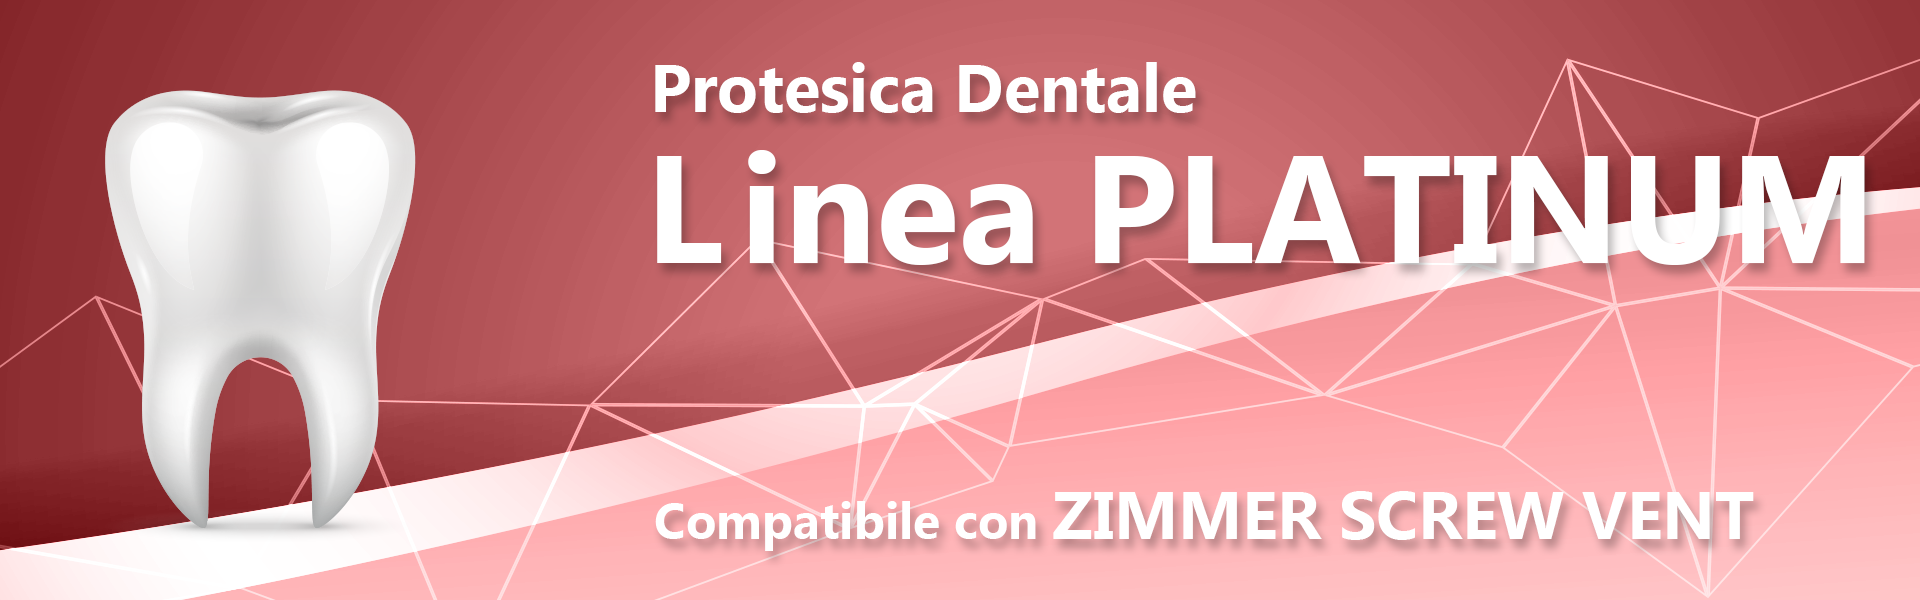 Linea PLATINUM (compatibile con ZIMMER)